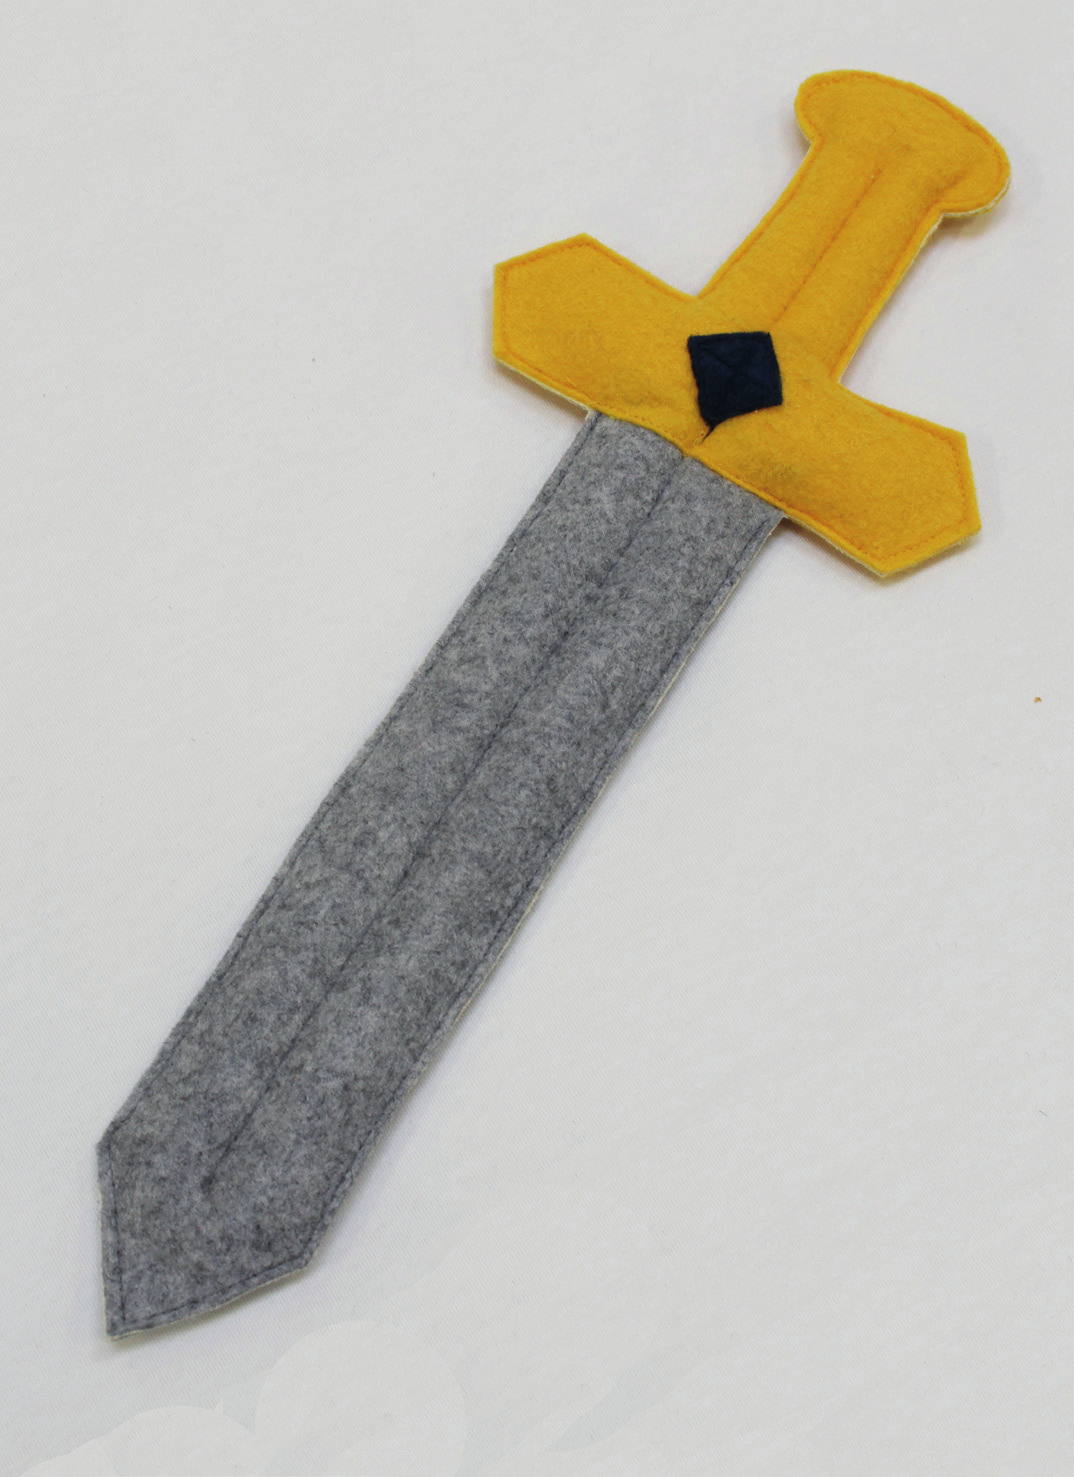 Sy det gule skaft oven på den grå klinge. Sy den blå firkant fast på skaftet. (se billede) Gentag ved den anden side af sværdet.